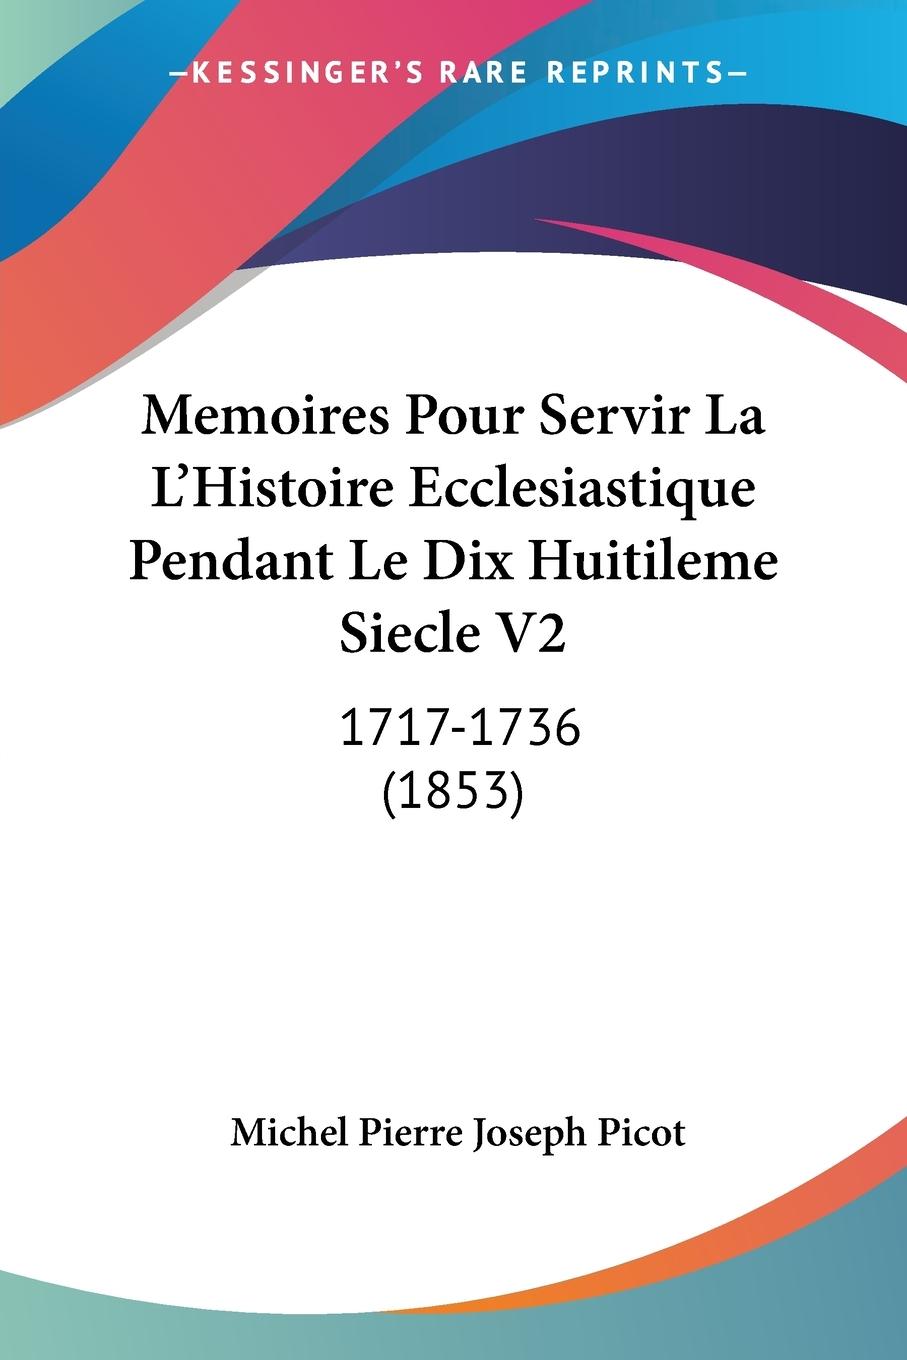 Memoires Pour Servir La L Histoire Ecclesiastique Pendant Le Dix Huitileme Siecle V2 - Picot, Michel Pierre Joseph